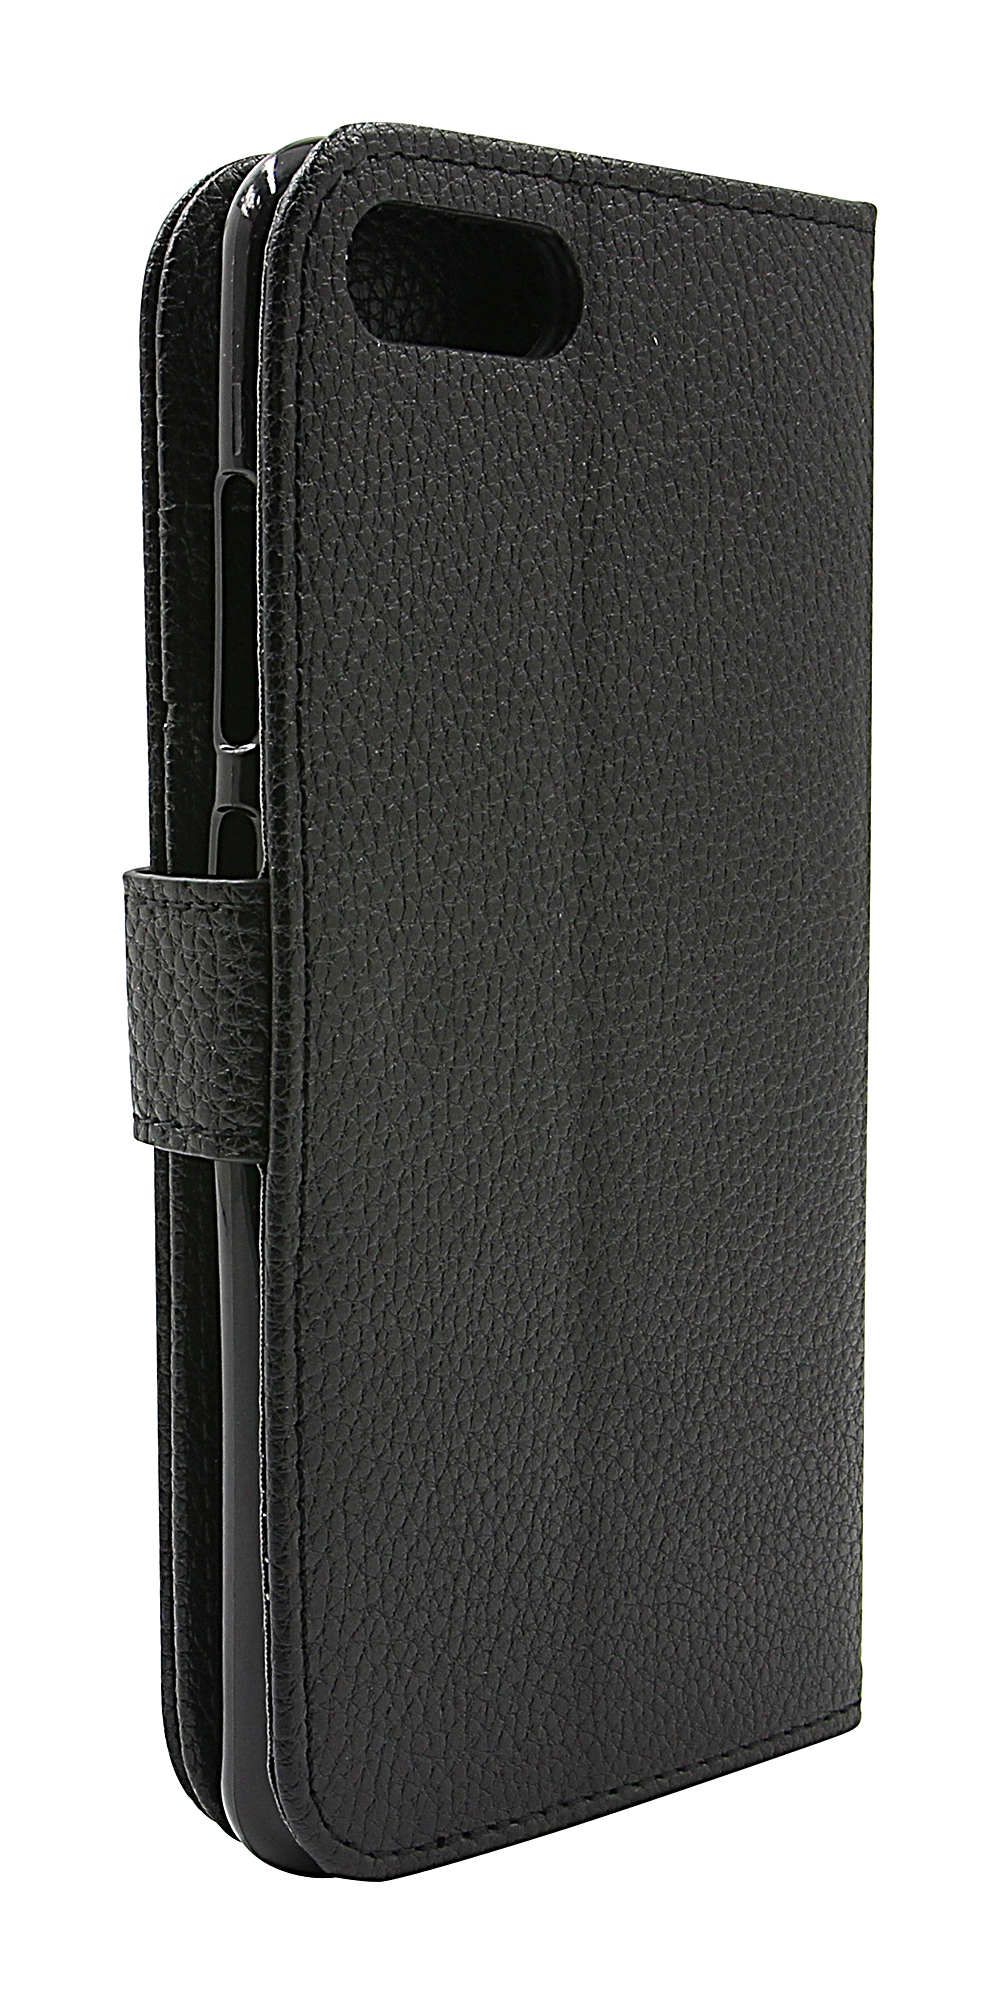 New Standcase Wallet Asus ZenFone 4 Max (ZC554KL)